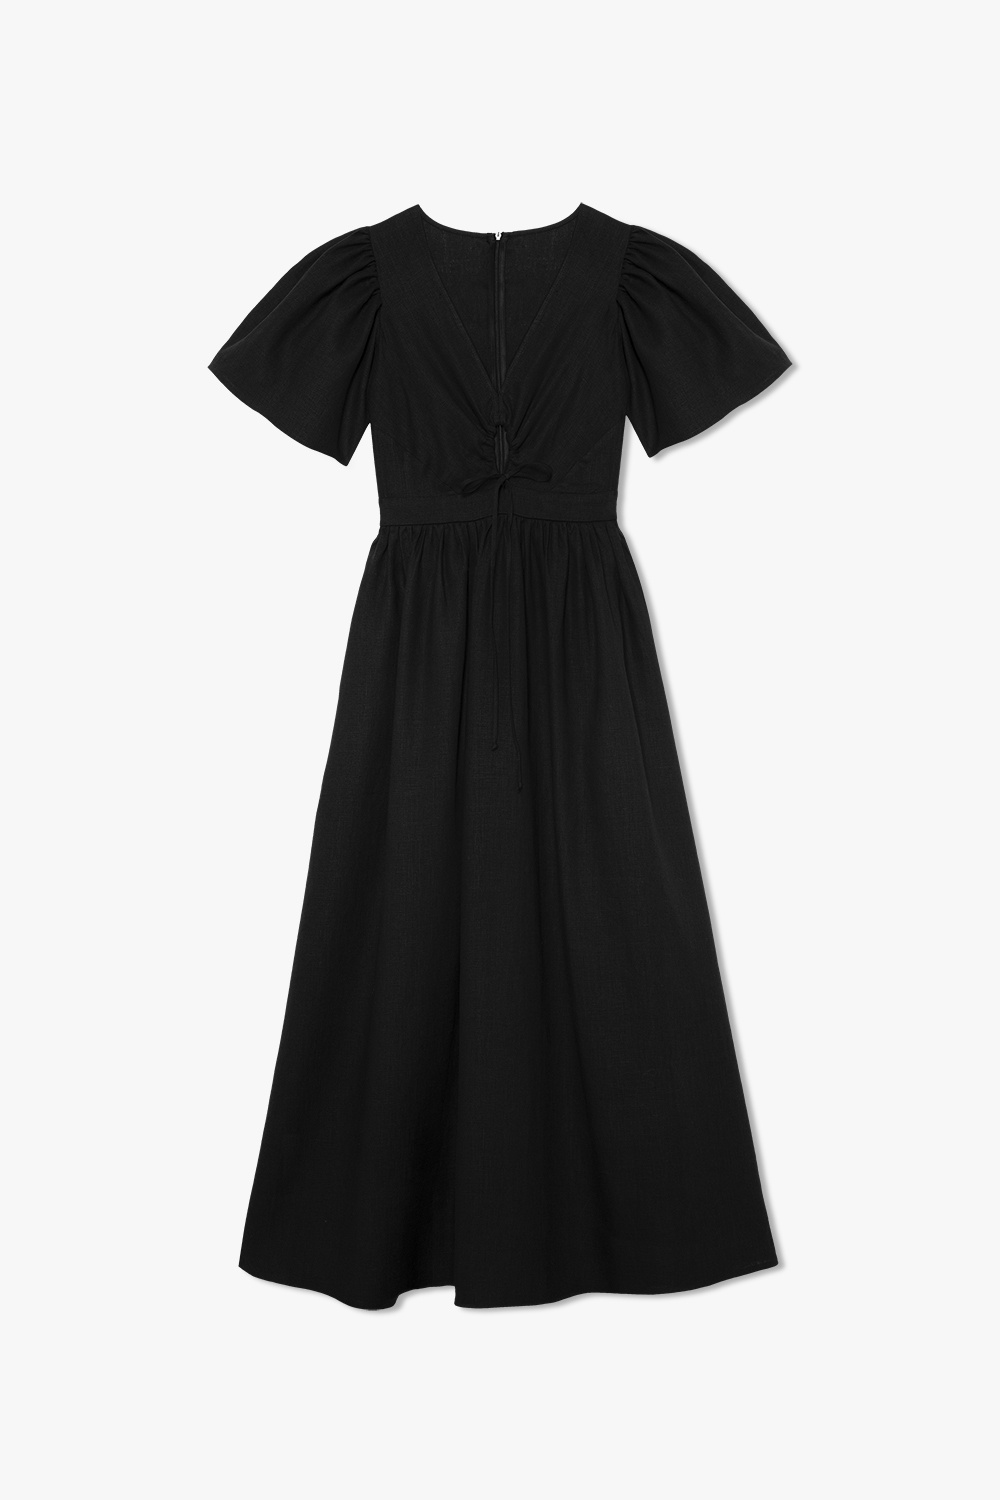 black panelled maxi dress ‘Talia’ linen dress